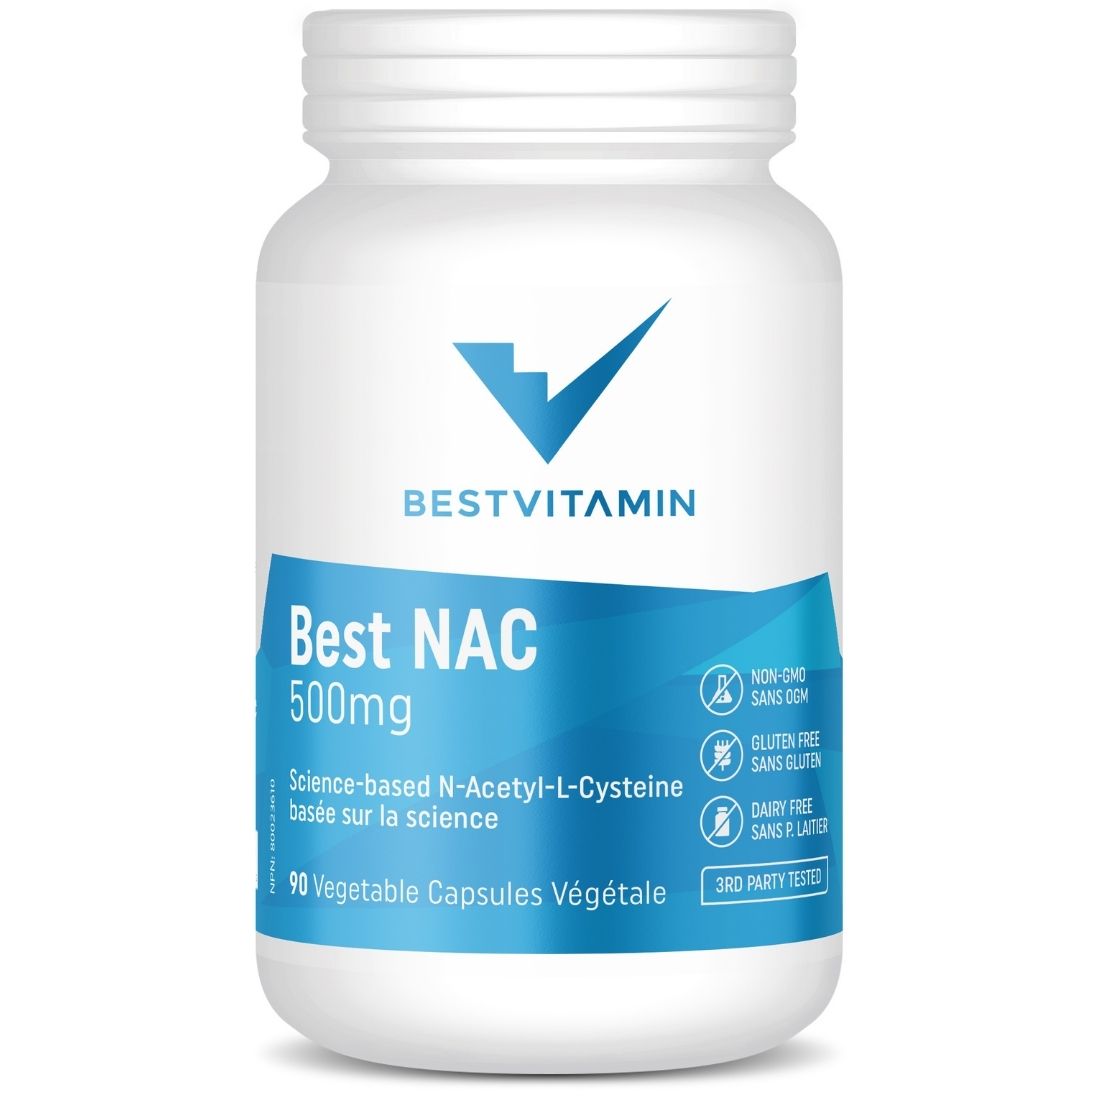 BestVitamin Best NAC 500mg, N-Acetyl Cysteine, Gluten-Free, Non-GMO, 90 Vegetable Capsules